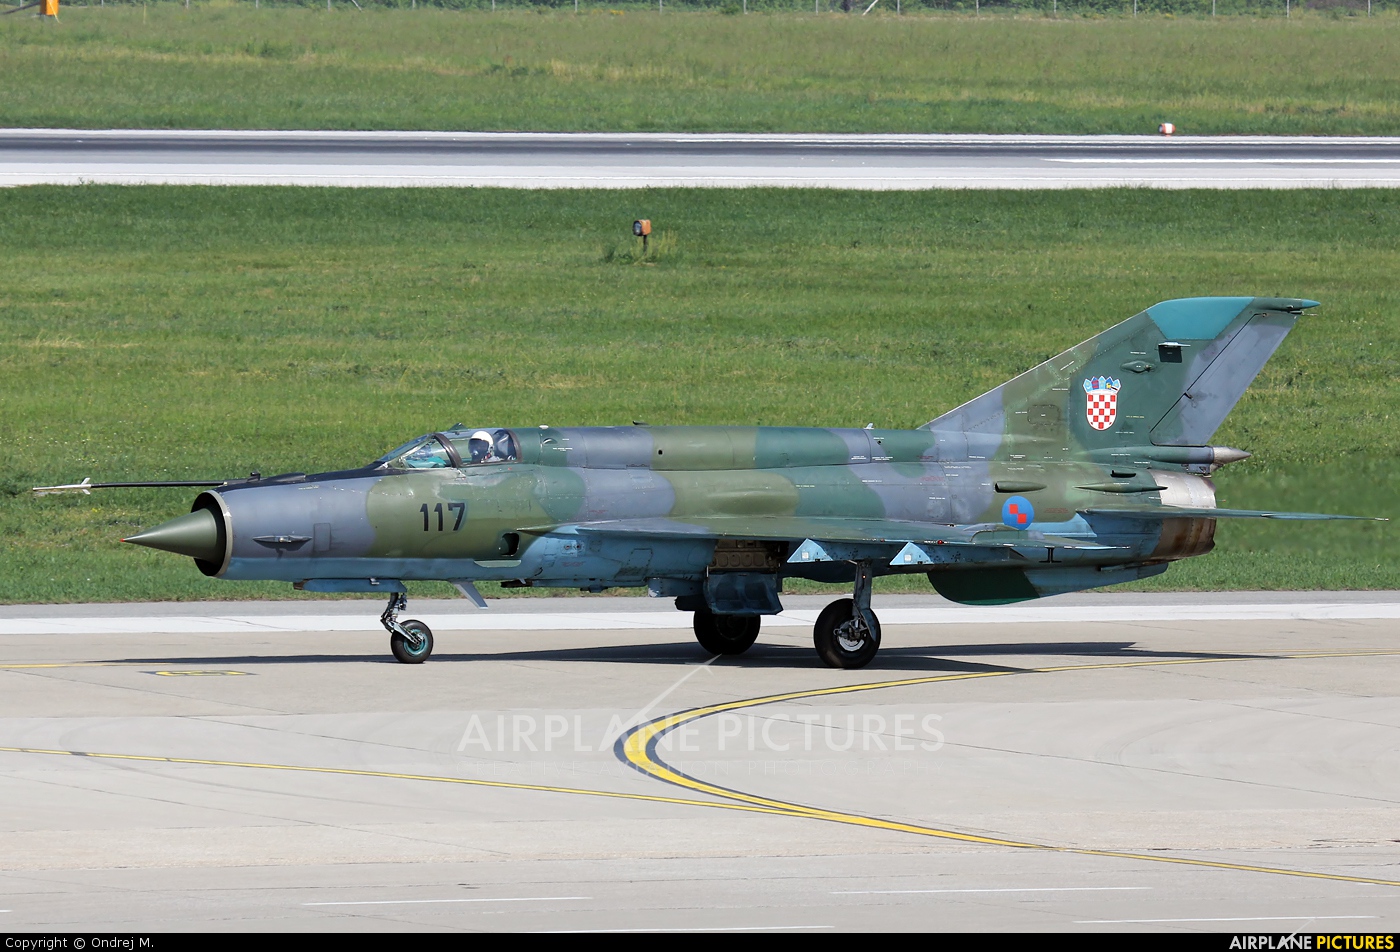 Croatia - Air Force 117 aircraft at Zagreb